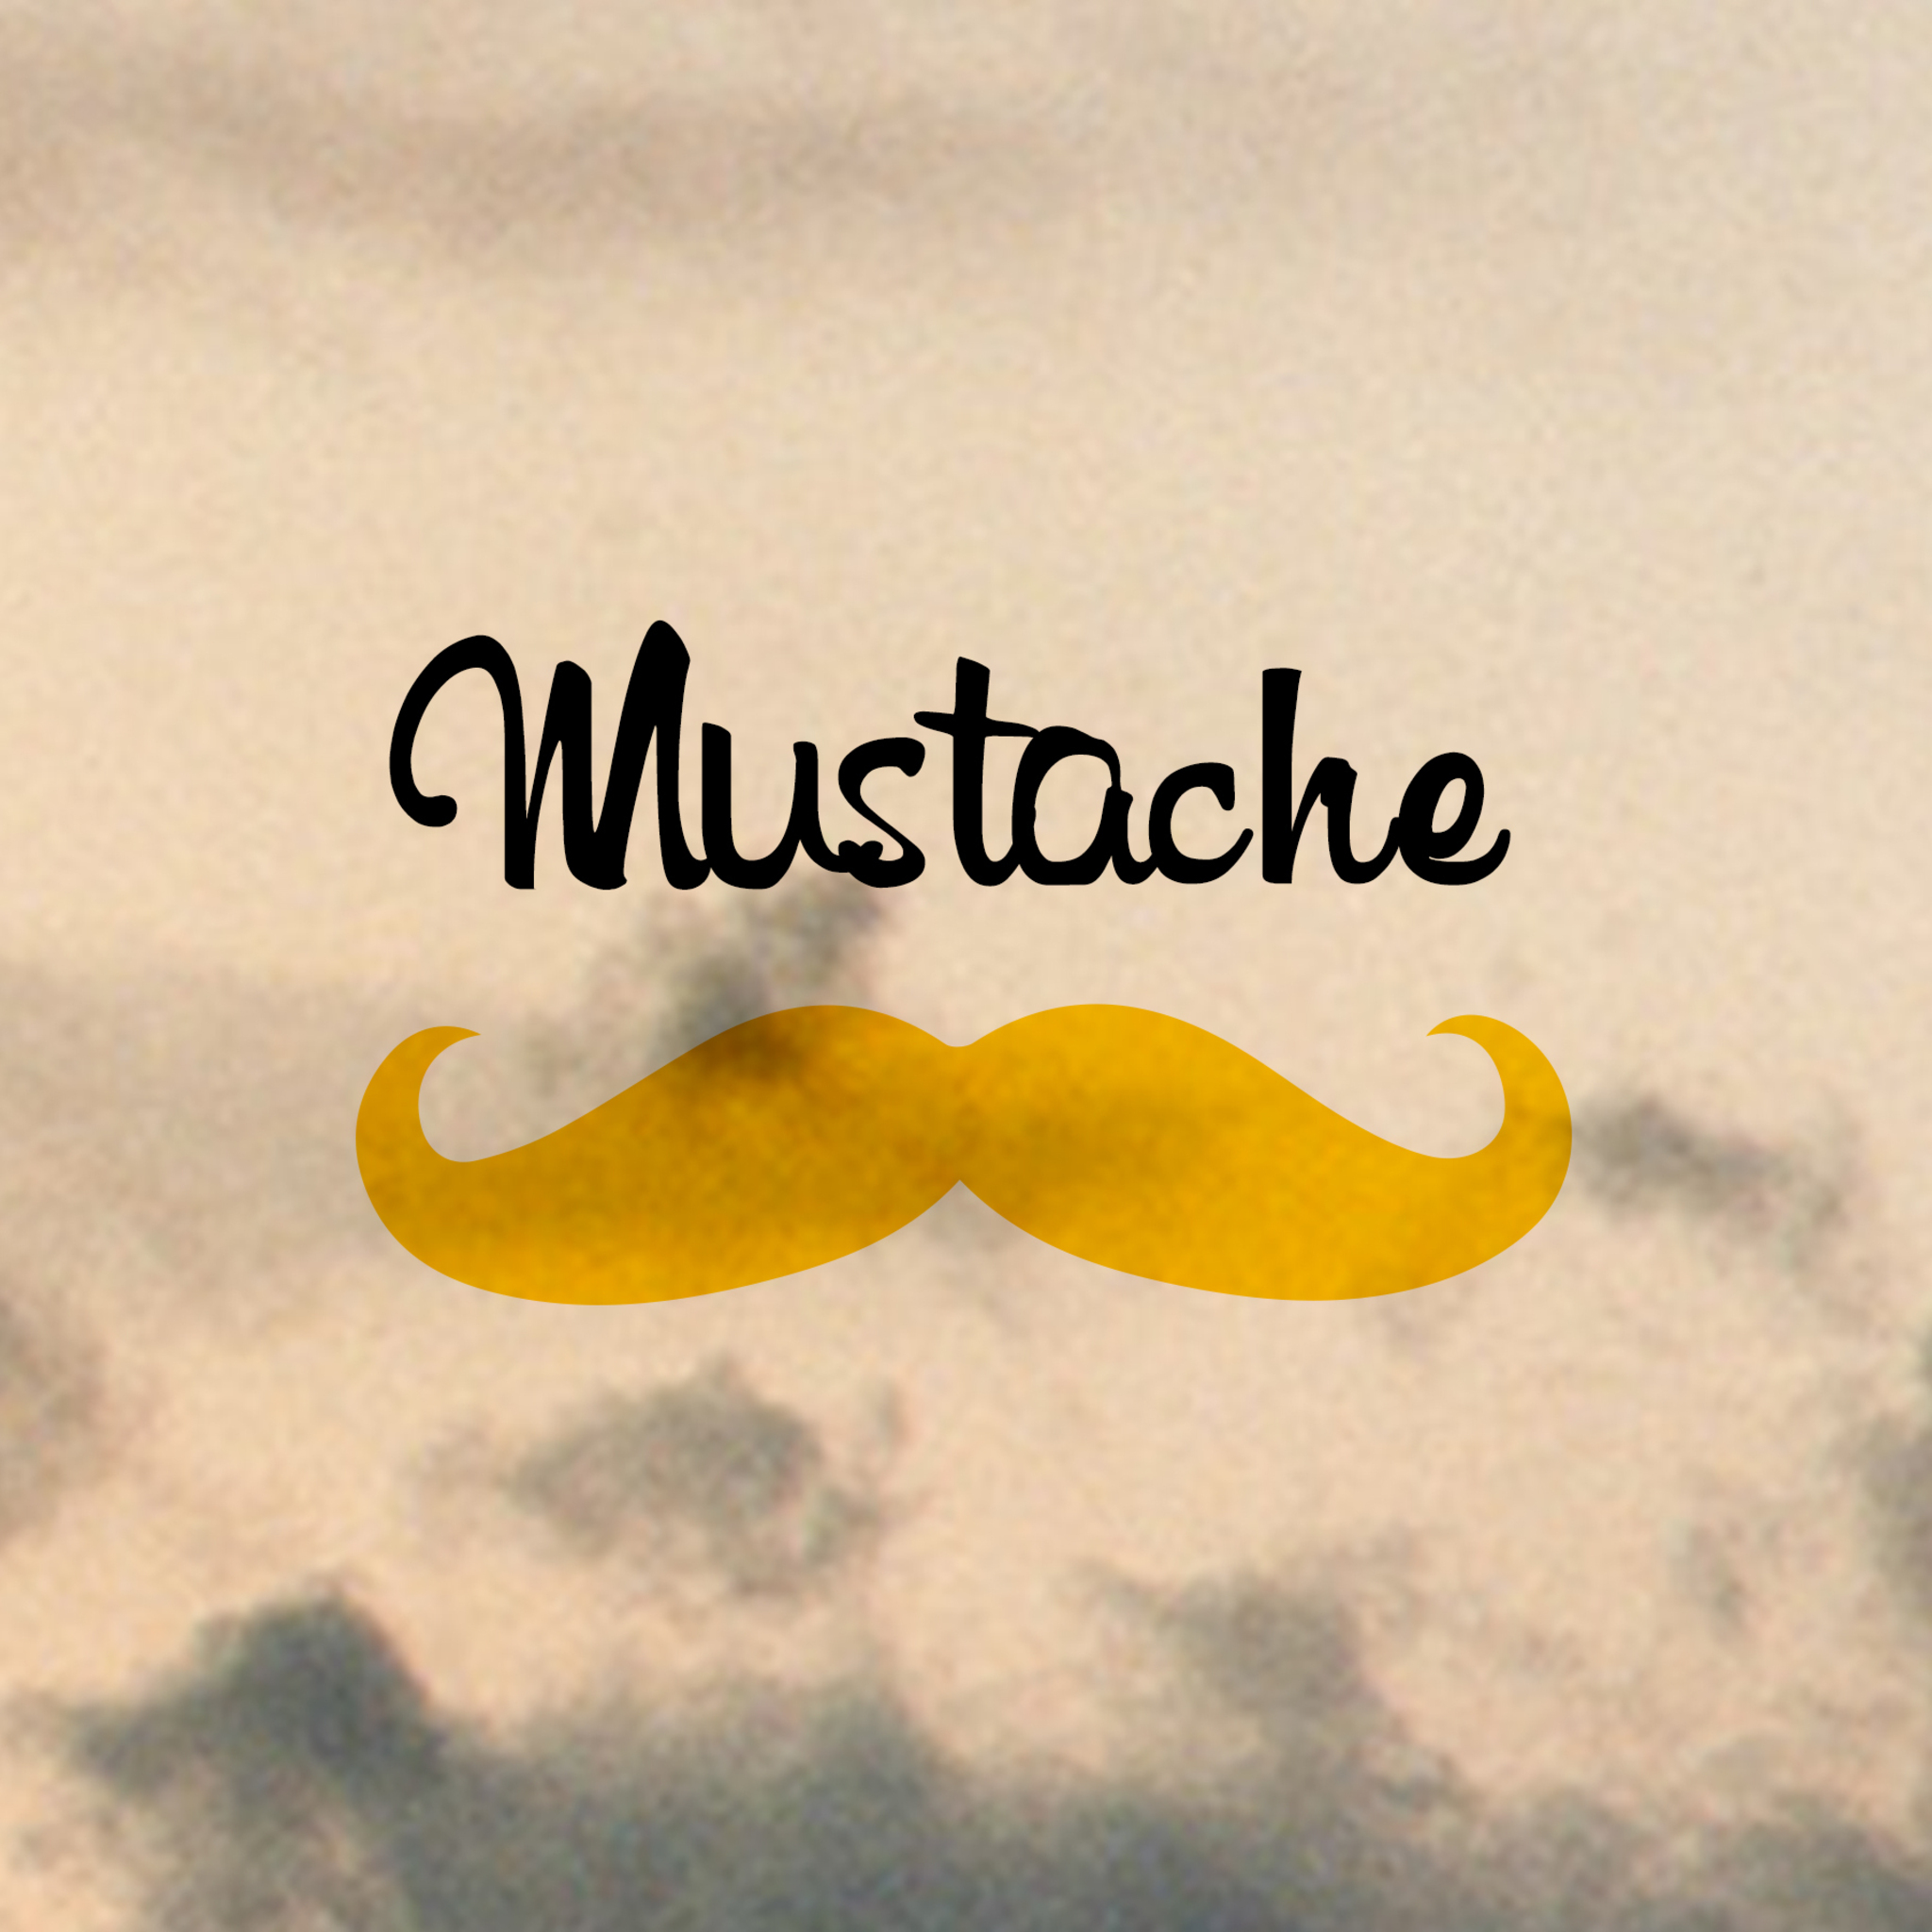 mustache-is-good.jpg